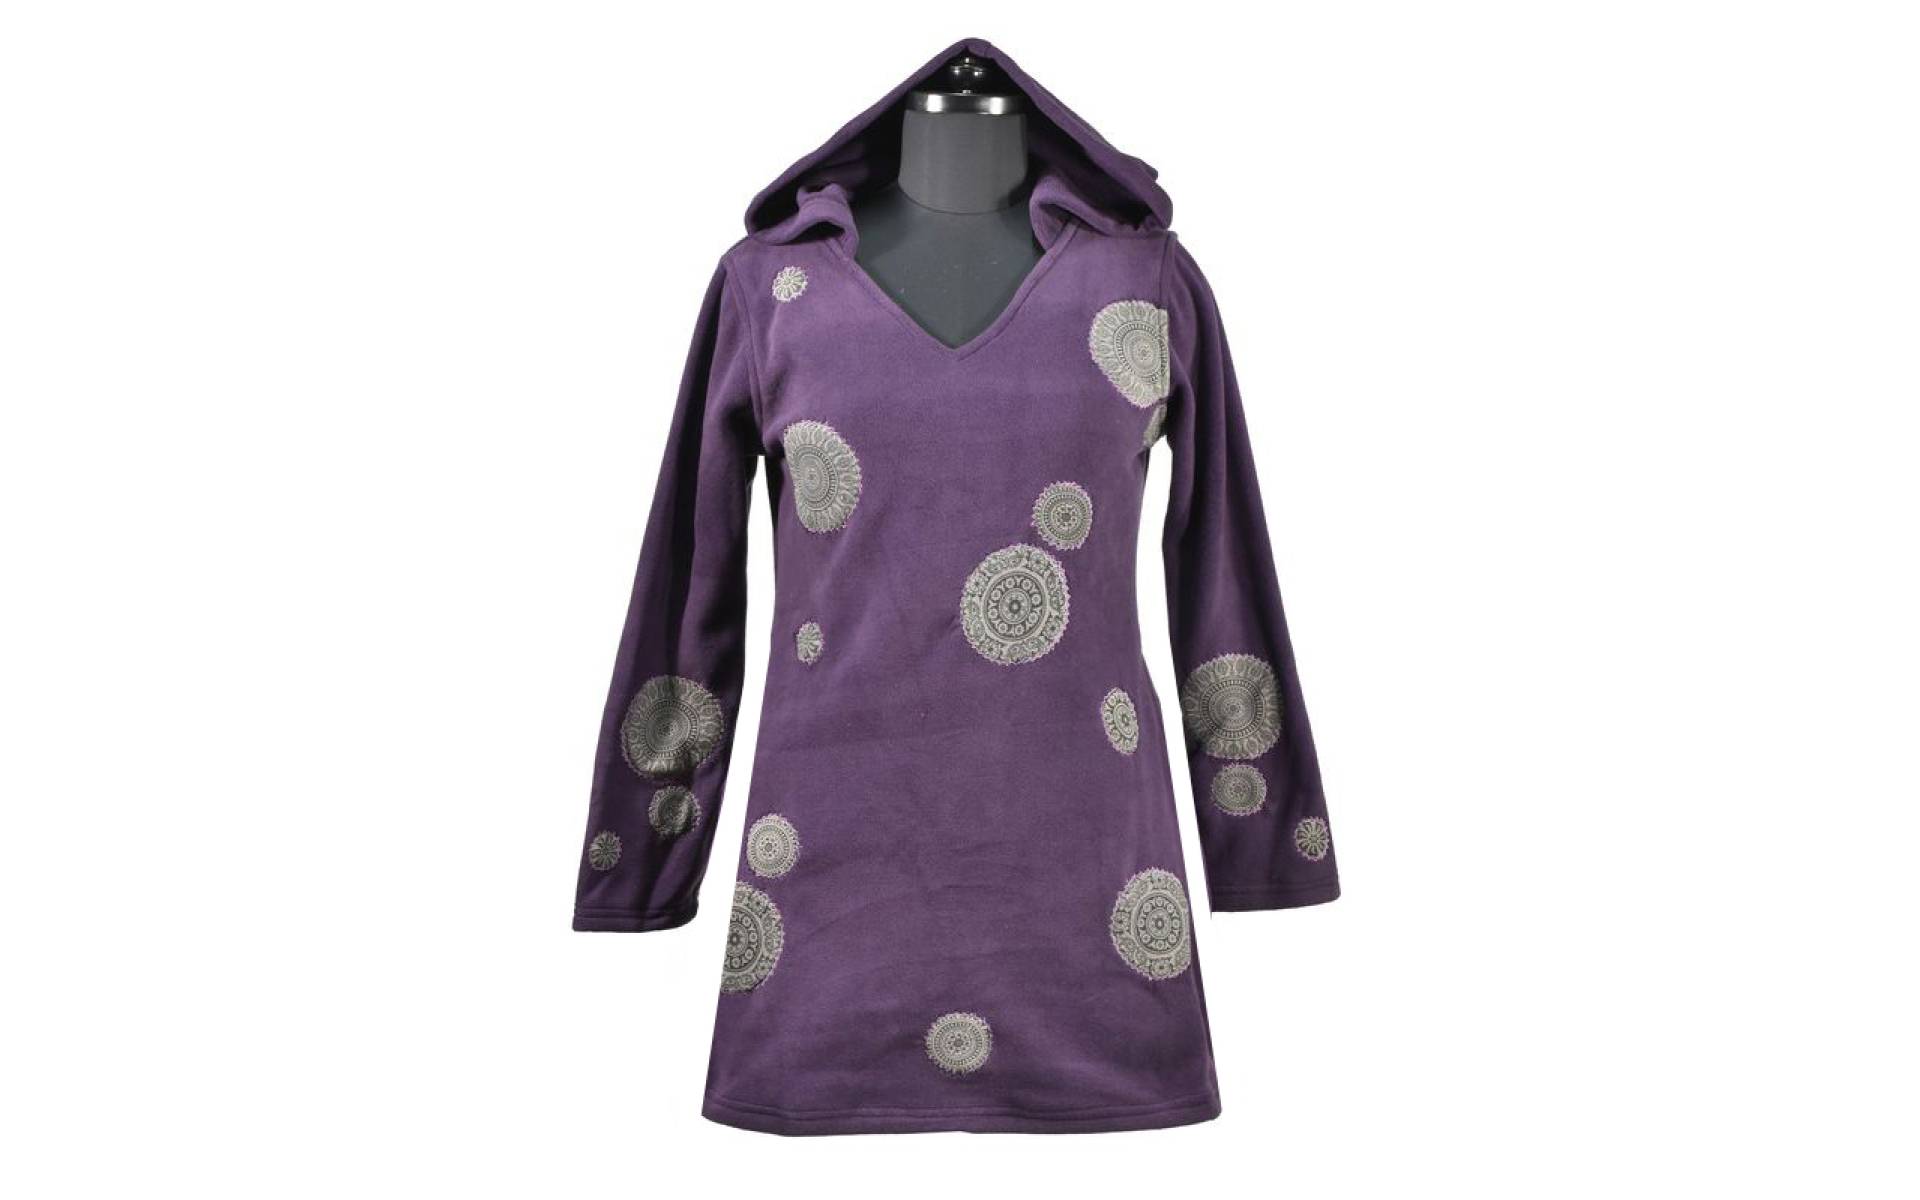 Slivkové mikinové šaty s kapucňou a farebnými aplikáciami, V výstrih